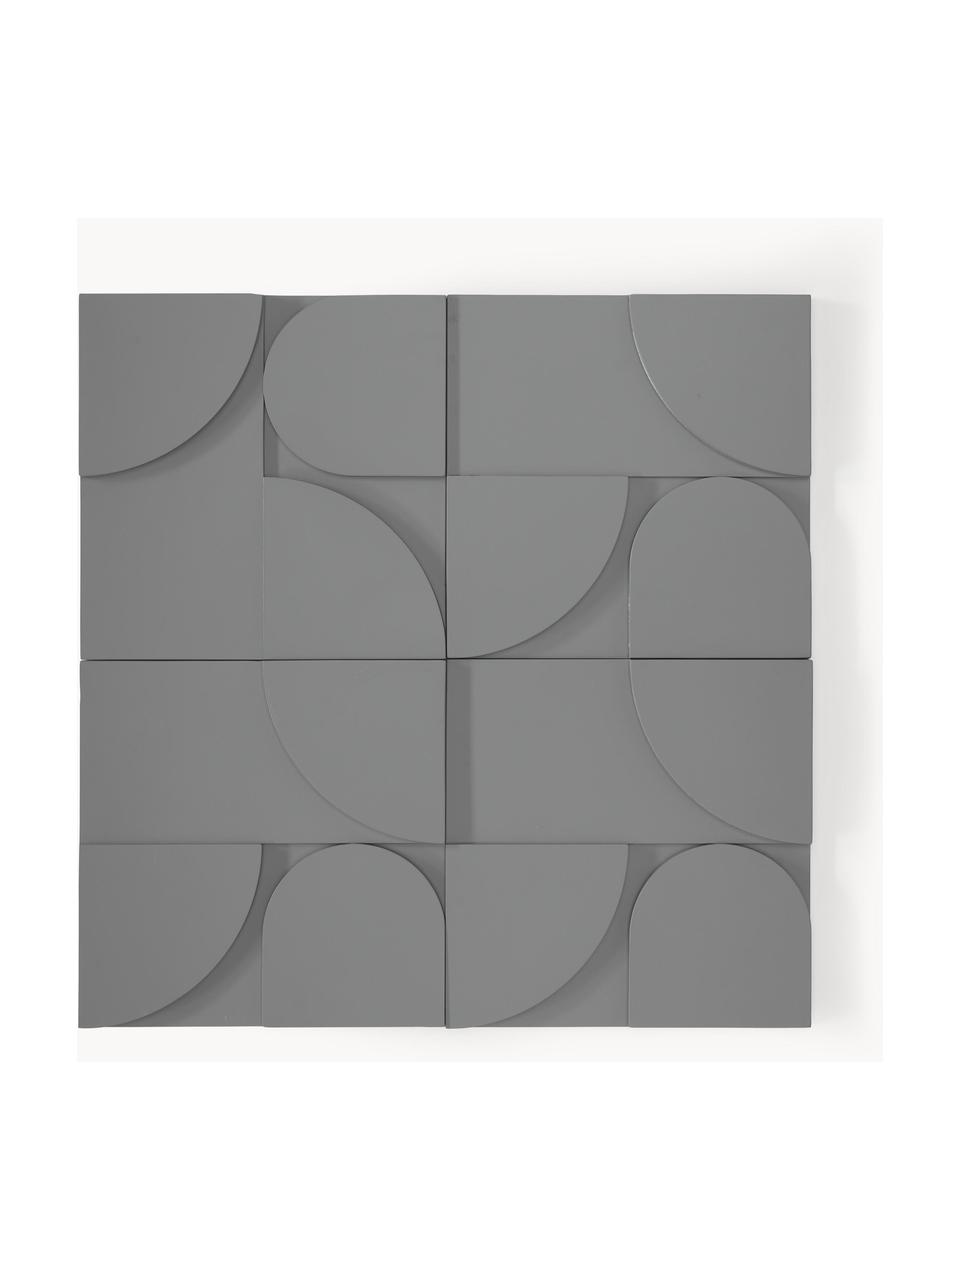 Sada nástěnných dekorací Massimo, 4 díly, MDF deska (dřevovláknitá deska střední hustoty), Tmavě šedá, Š 80 cm, V 80 cm